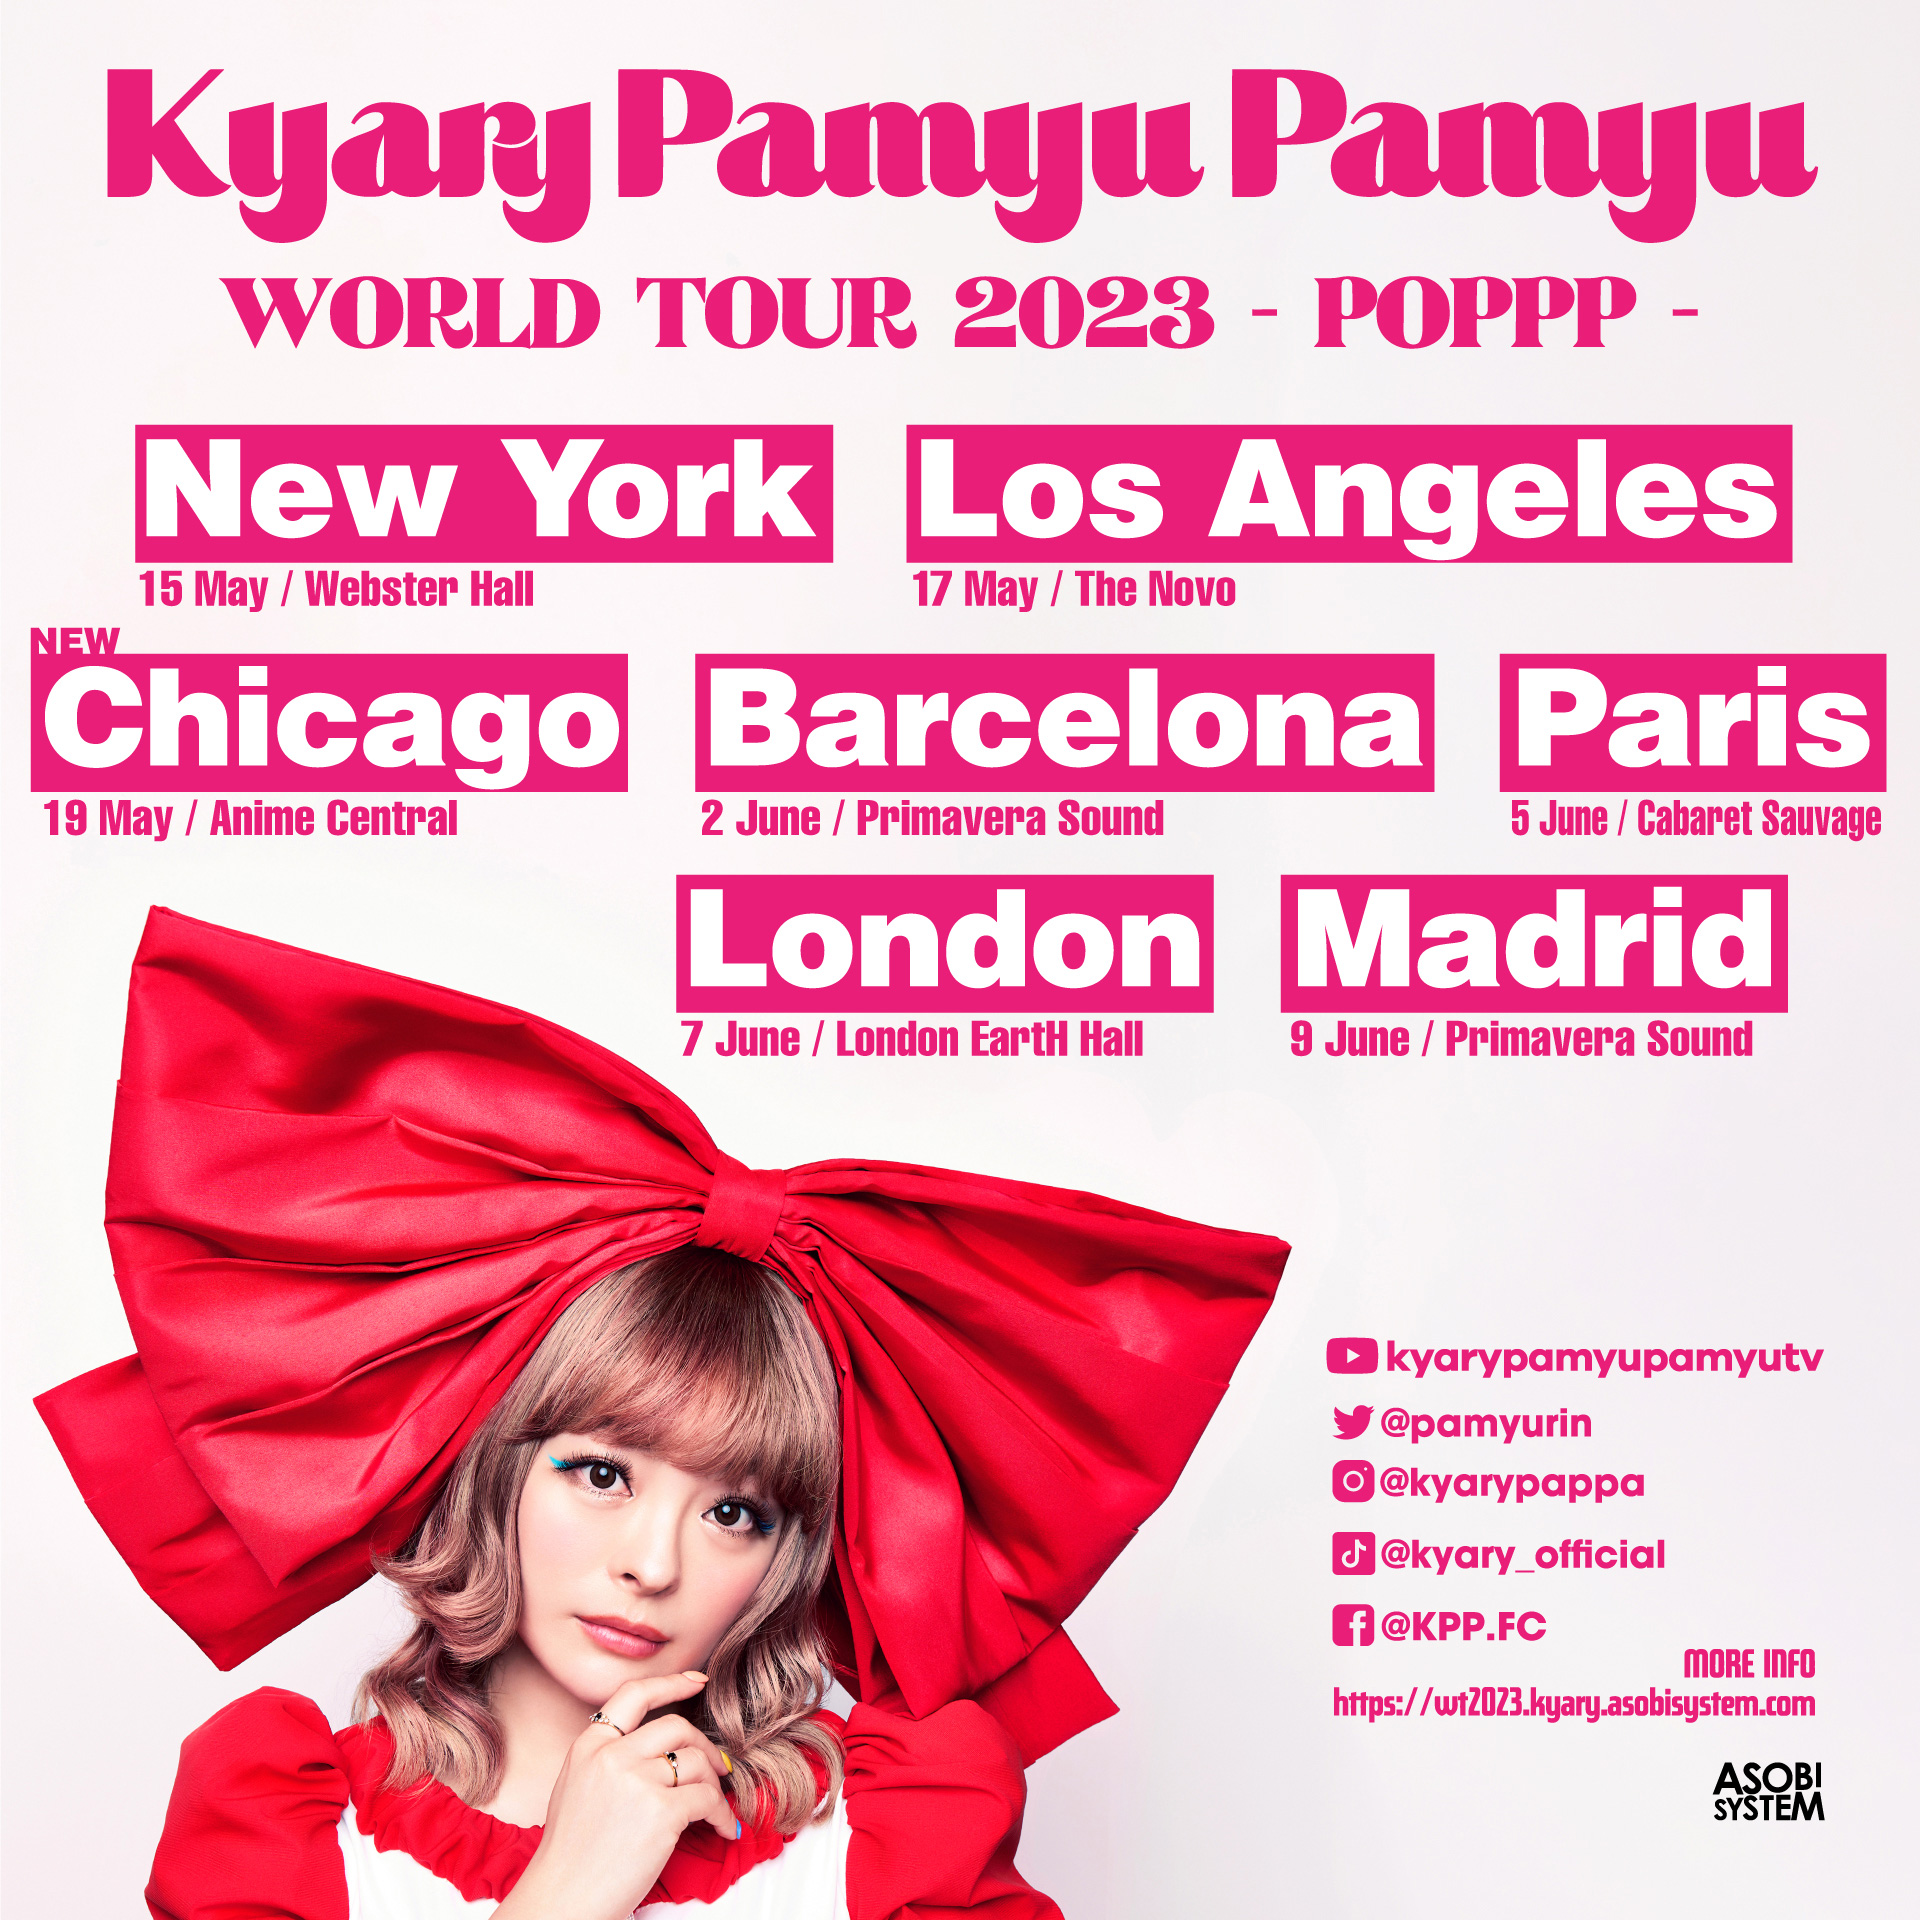 Kyary Pamyu Pamyu WORLD TOUR 2023 - POPPP 